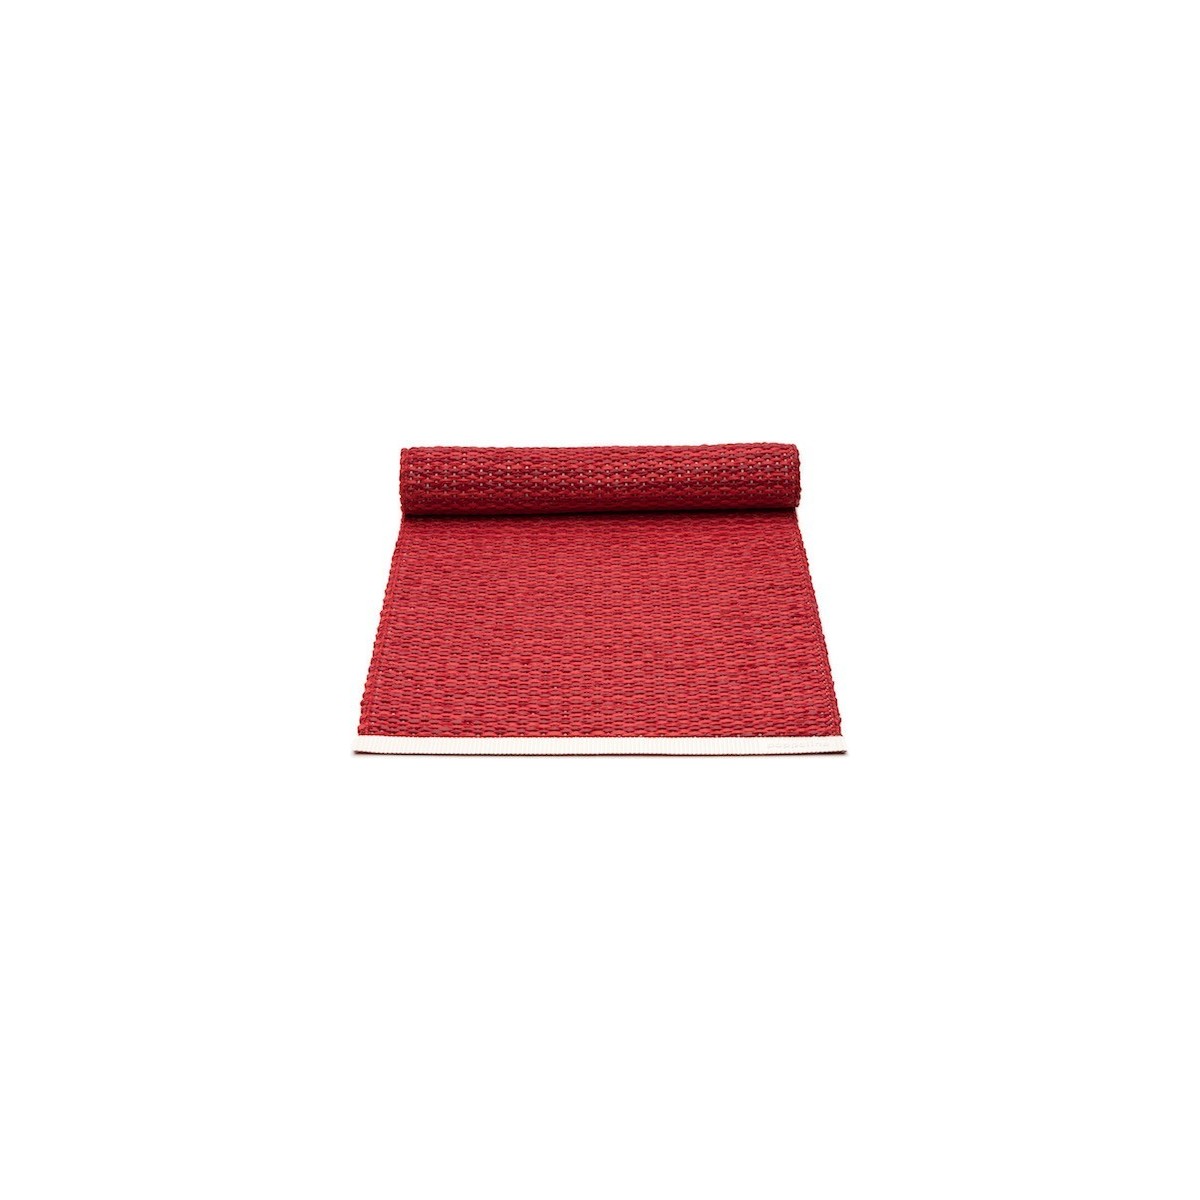 36x60cm - rouge foncé / rouge - chemin de table Mono